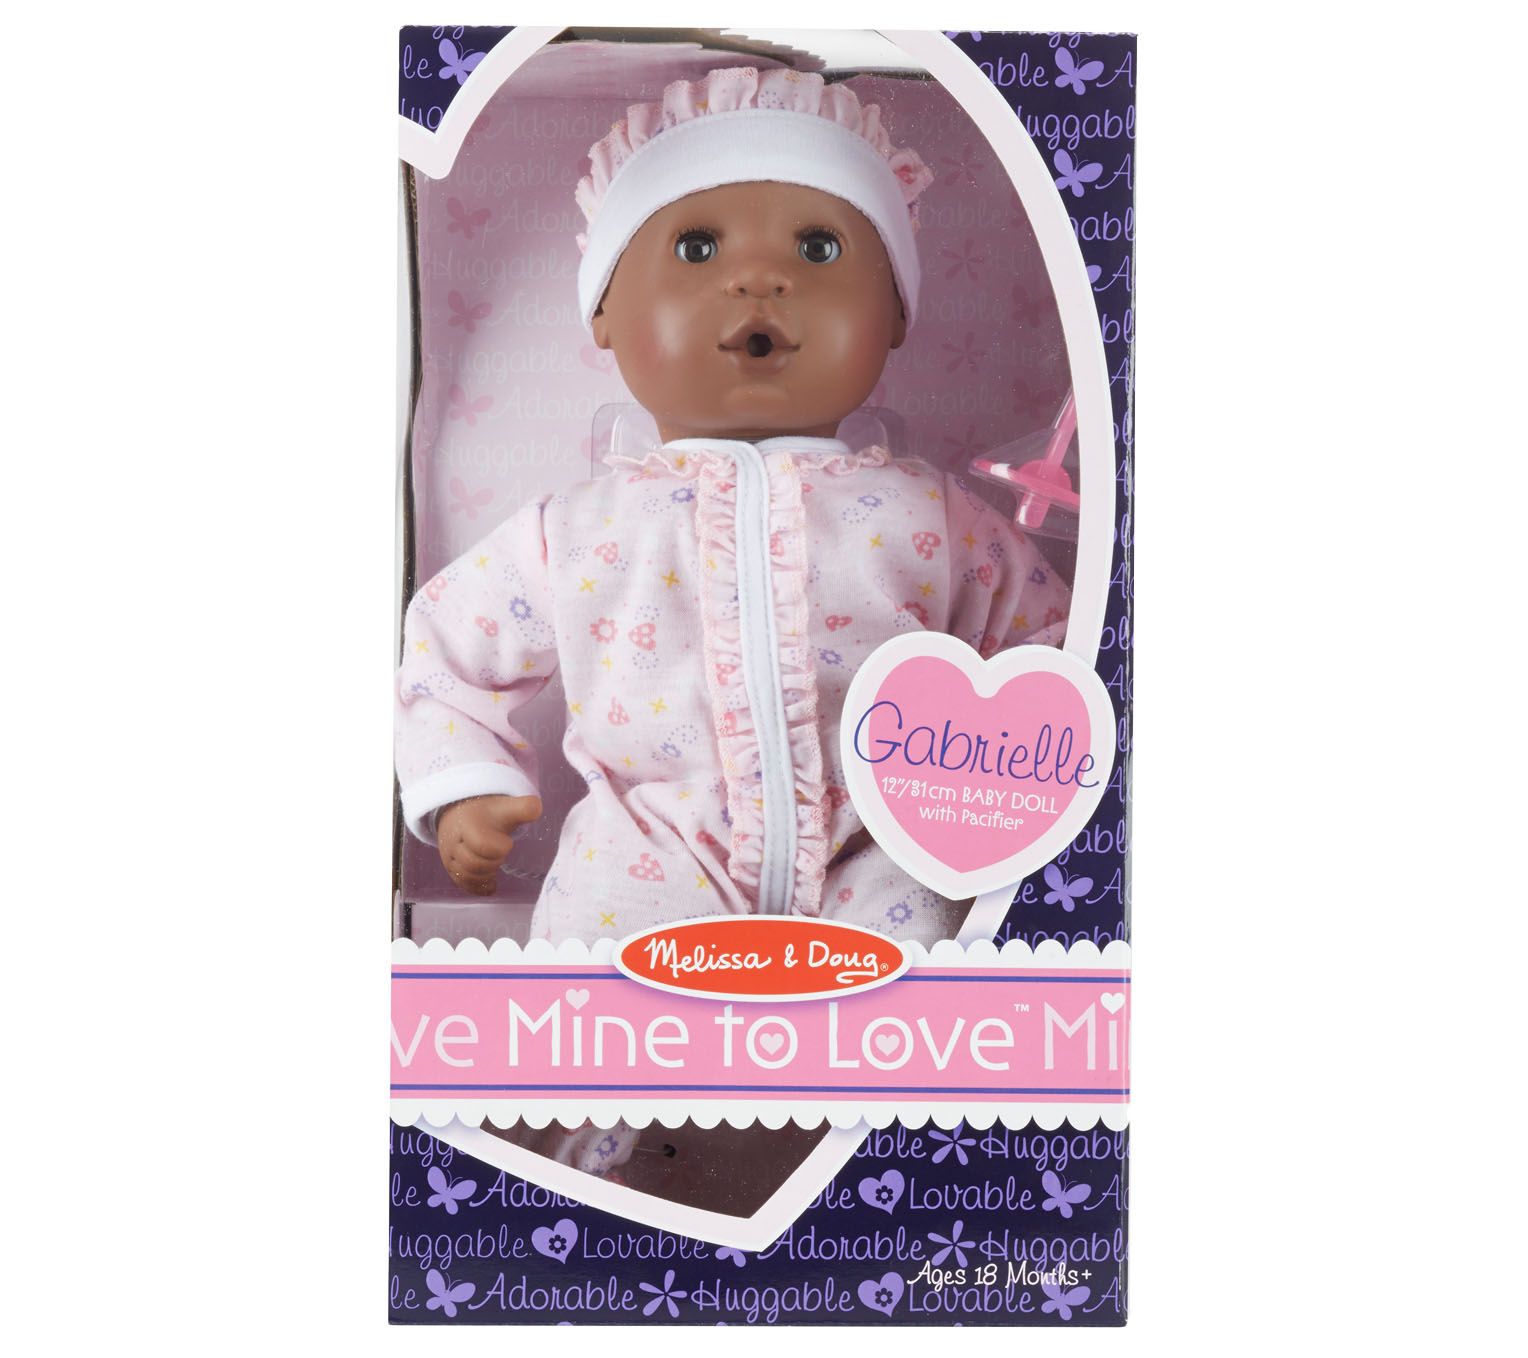 Mine to Love - Mariana 12 Baby Doll